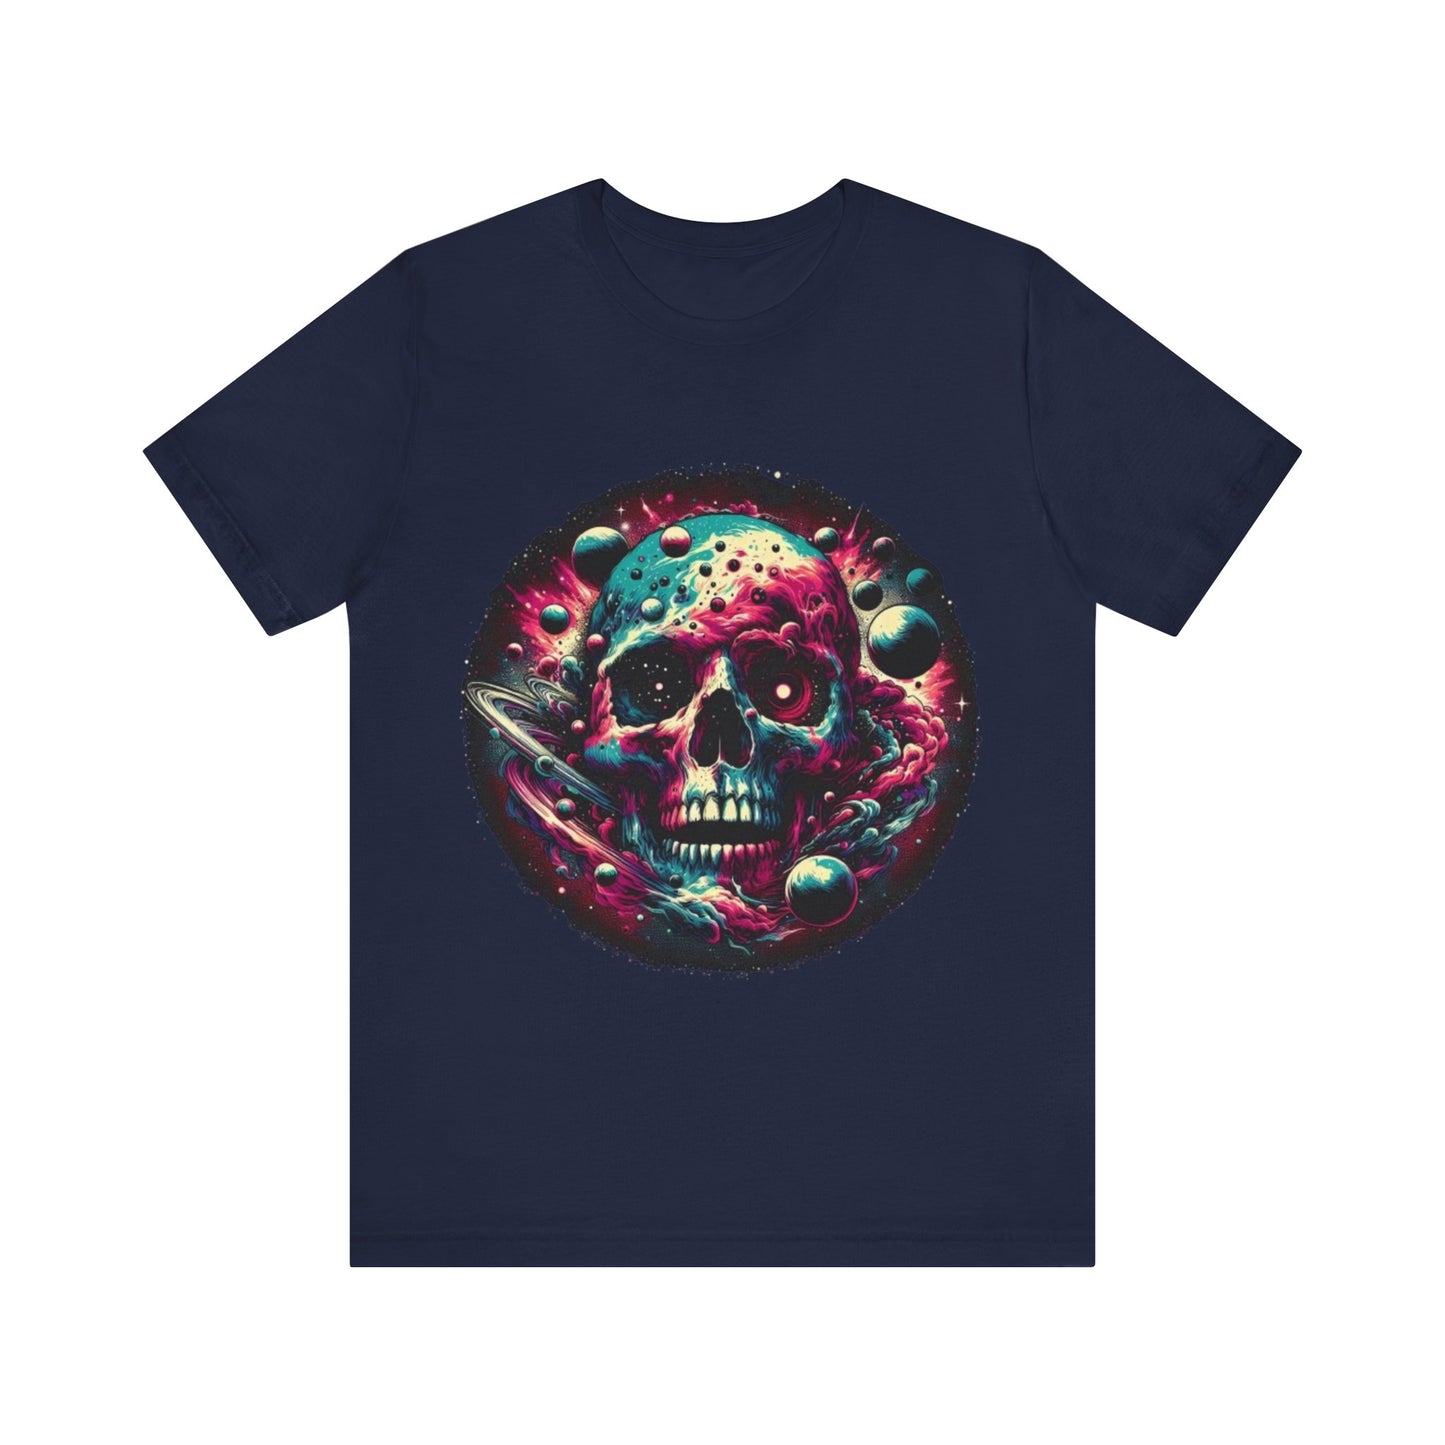 Unisex Cosmic Skull Galaxy T-shirt